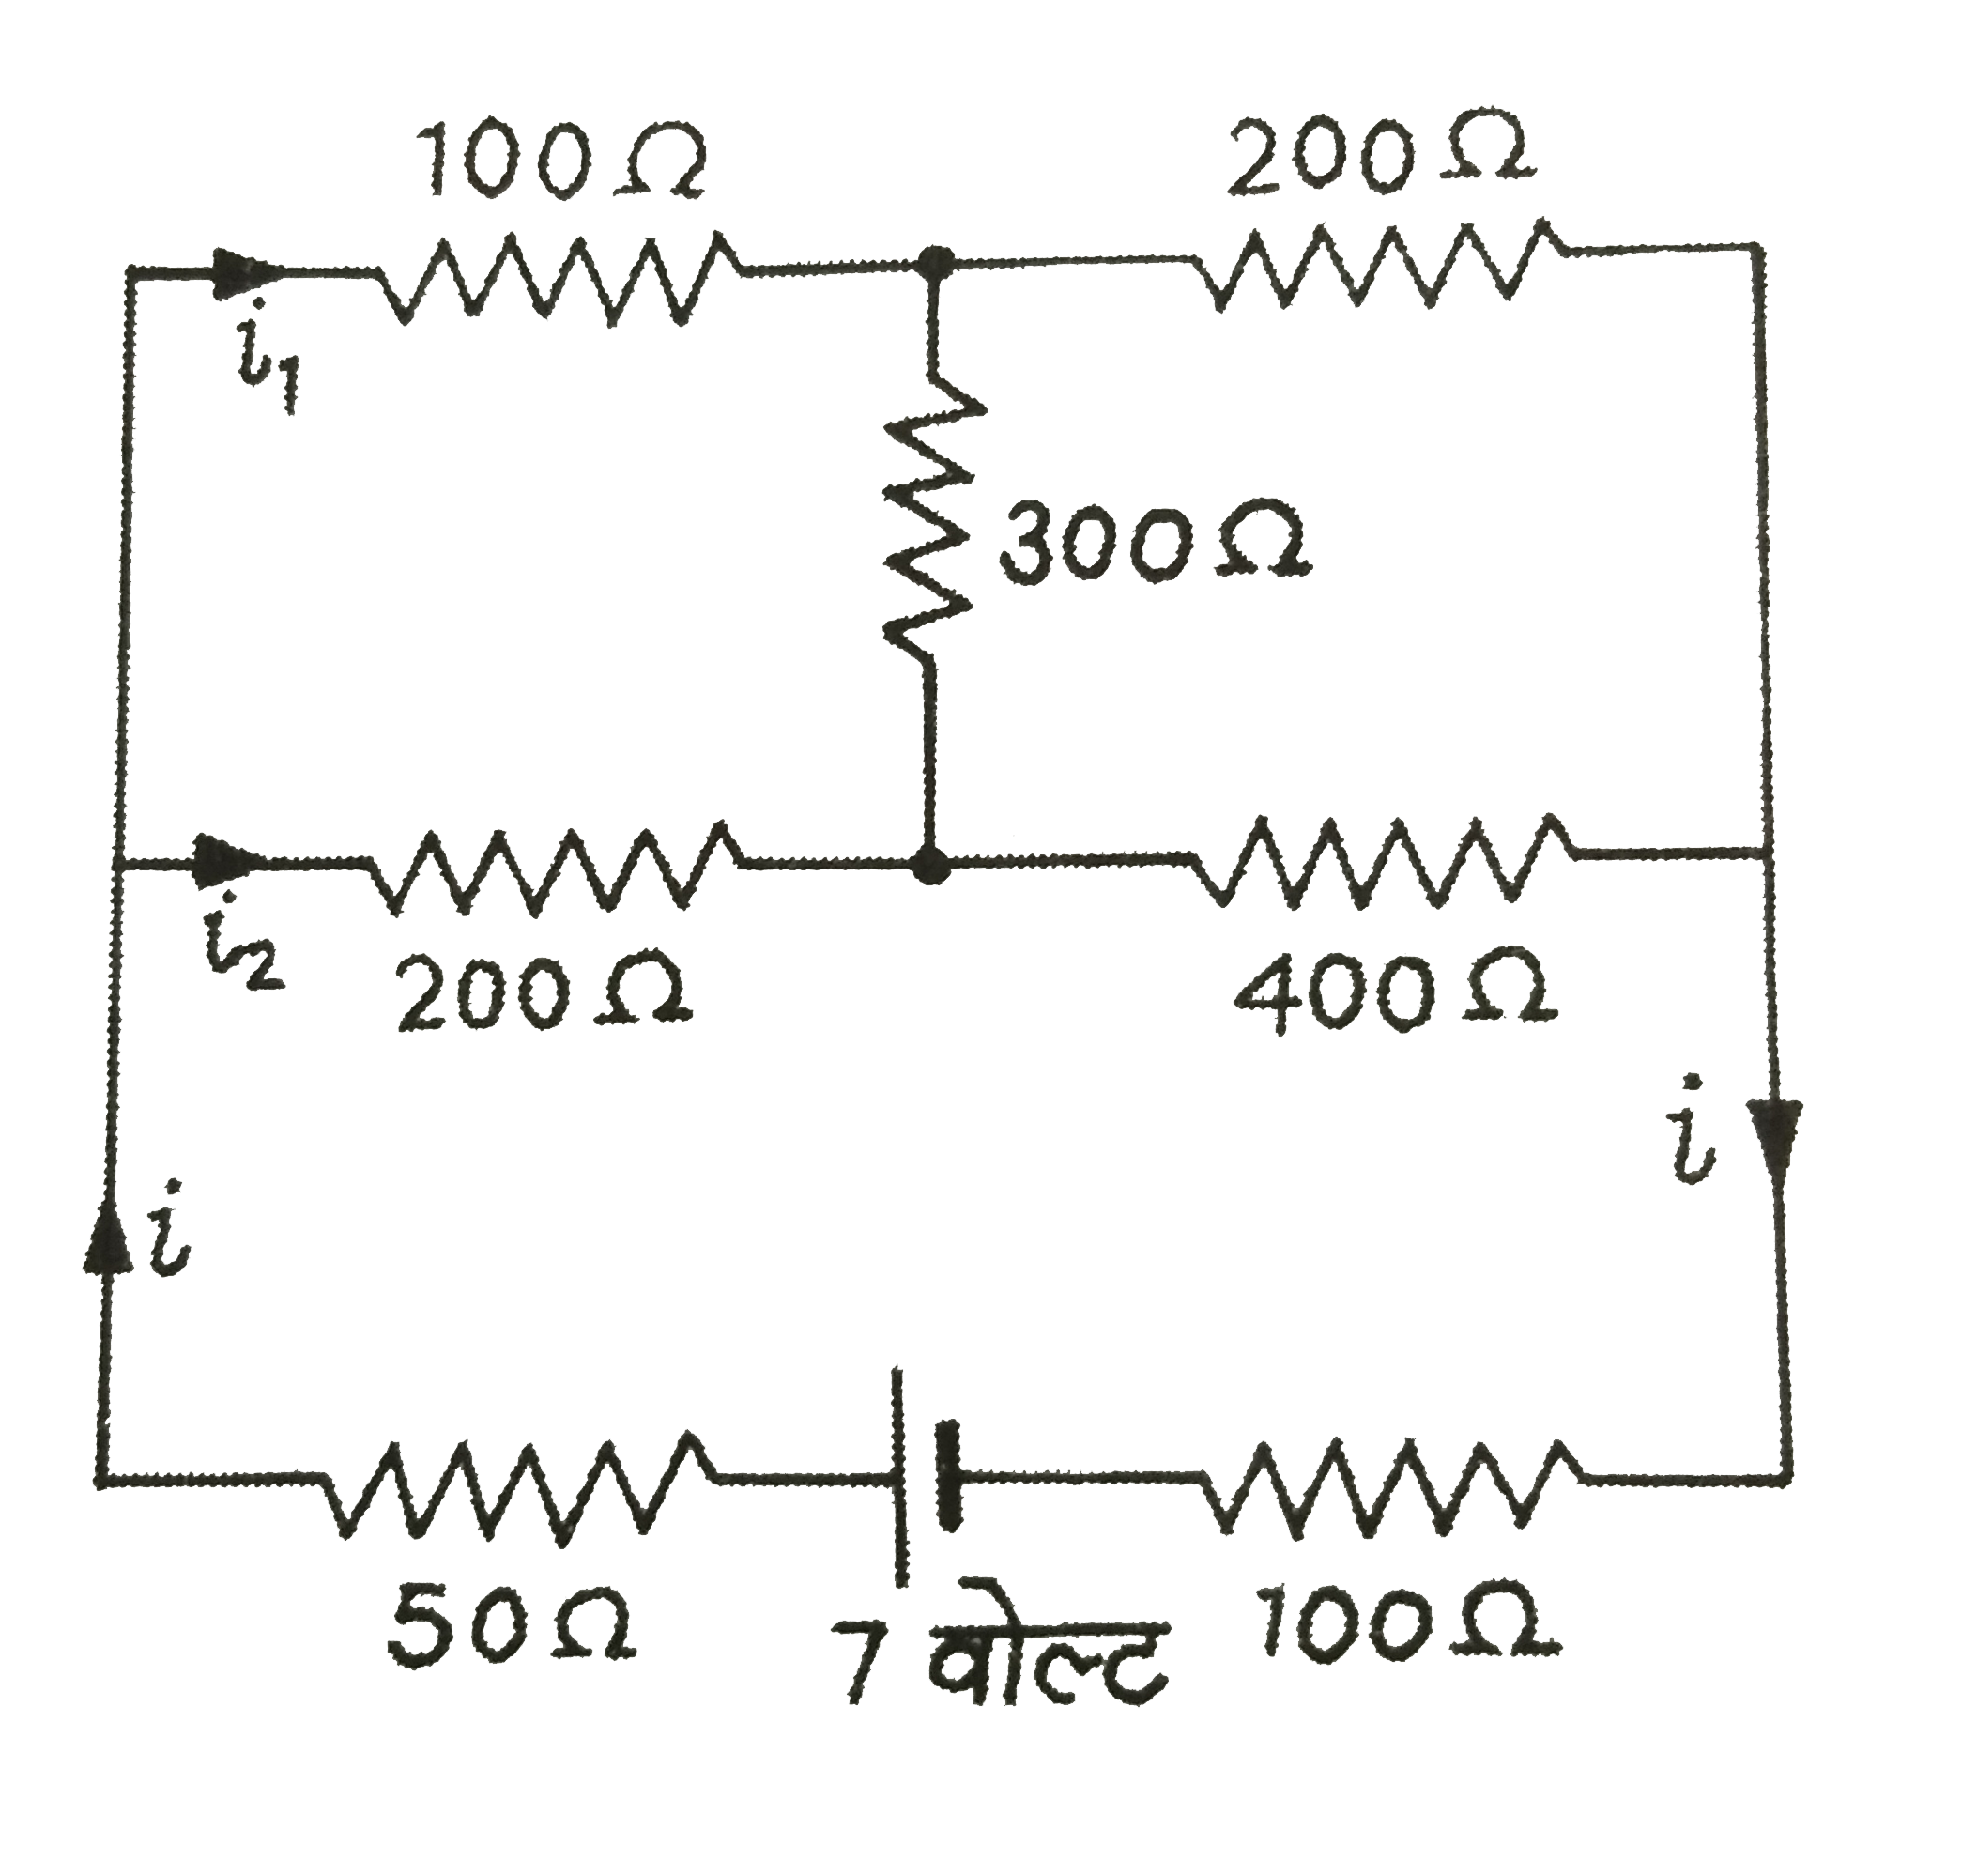 संग्लन परिपथ में 50Omega  तथा 400Omega  के प्रतिरोधों से जाने वाली विद्युत धाराओं तथा स्त्रोत द्वारा दी गई शक्ति की गणना कीजिए: यदि DC स्त्रोत के स्थान पर,एक प्रत्त्यावर्ती वोल्टता   V(t)=7sqrt(2)sin (1000t)   वोल्ट का स्त्रोत उपयोग किया जाये,तो 50 Omega  के प्रतिरोध से जाने वाली विद्युत धारा का वर्ग-मध्य-मूल मान तथा स्त्रोत द्वारा दी गई औसत शक्ति क्या होगी?